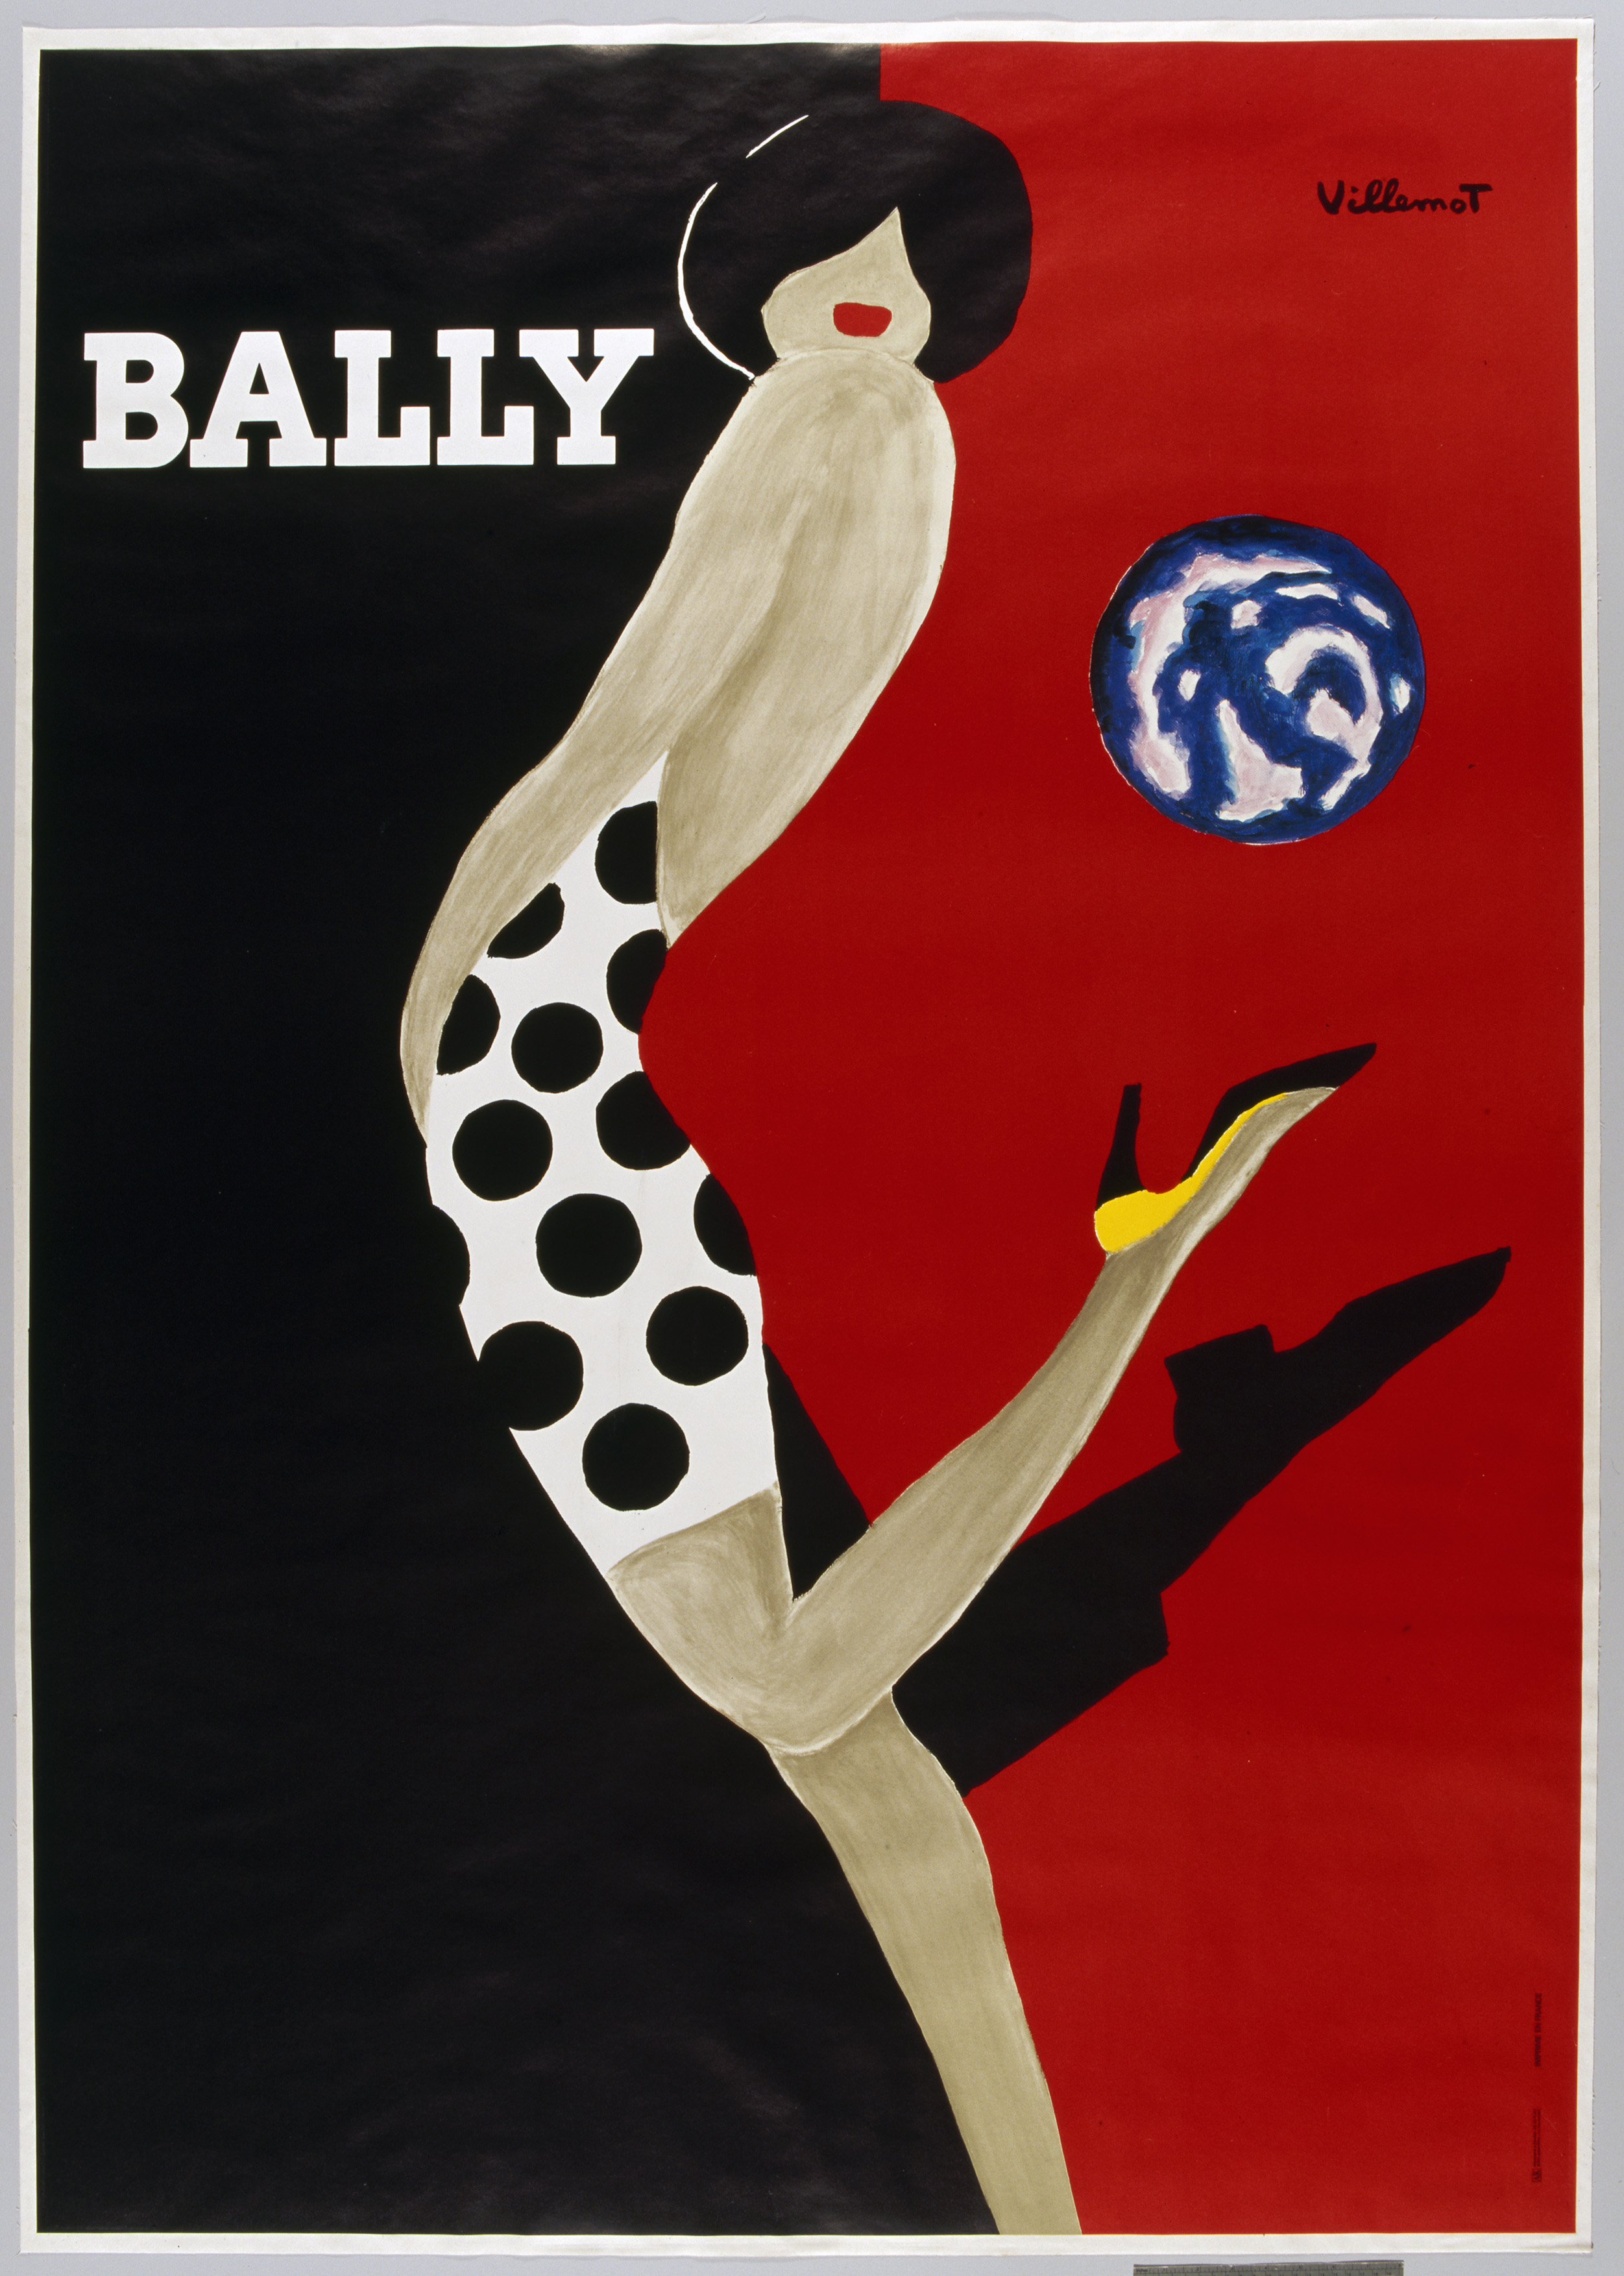 'Bally' poster